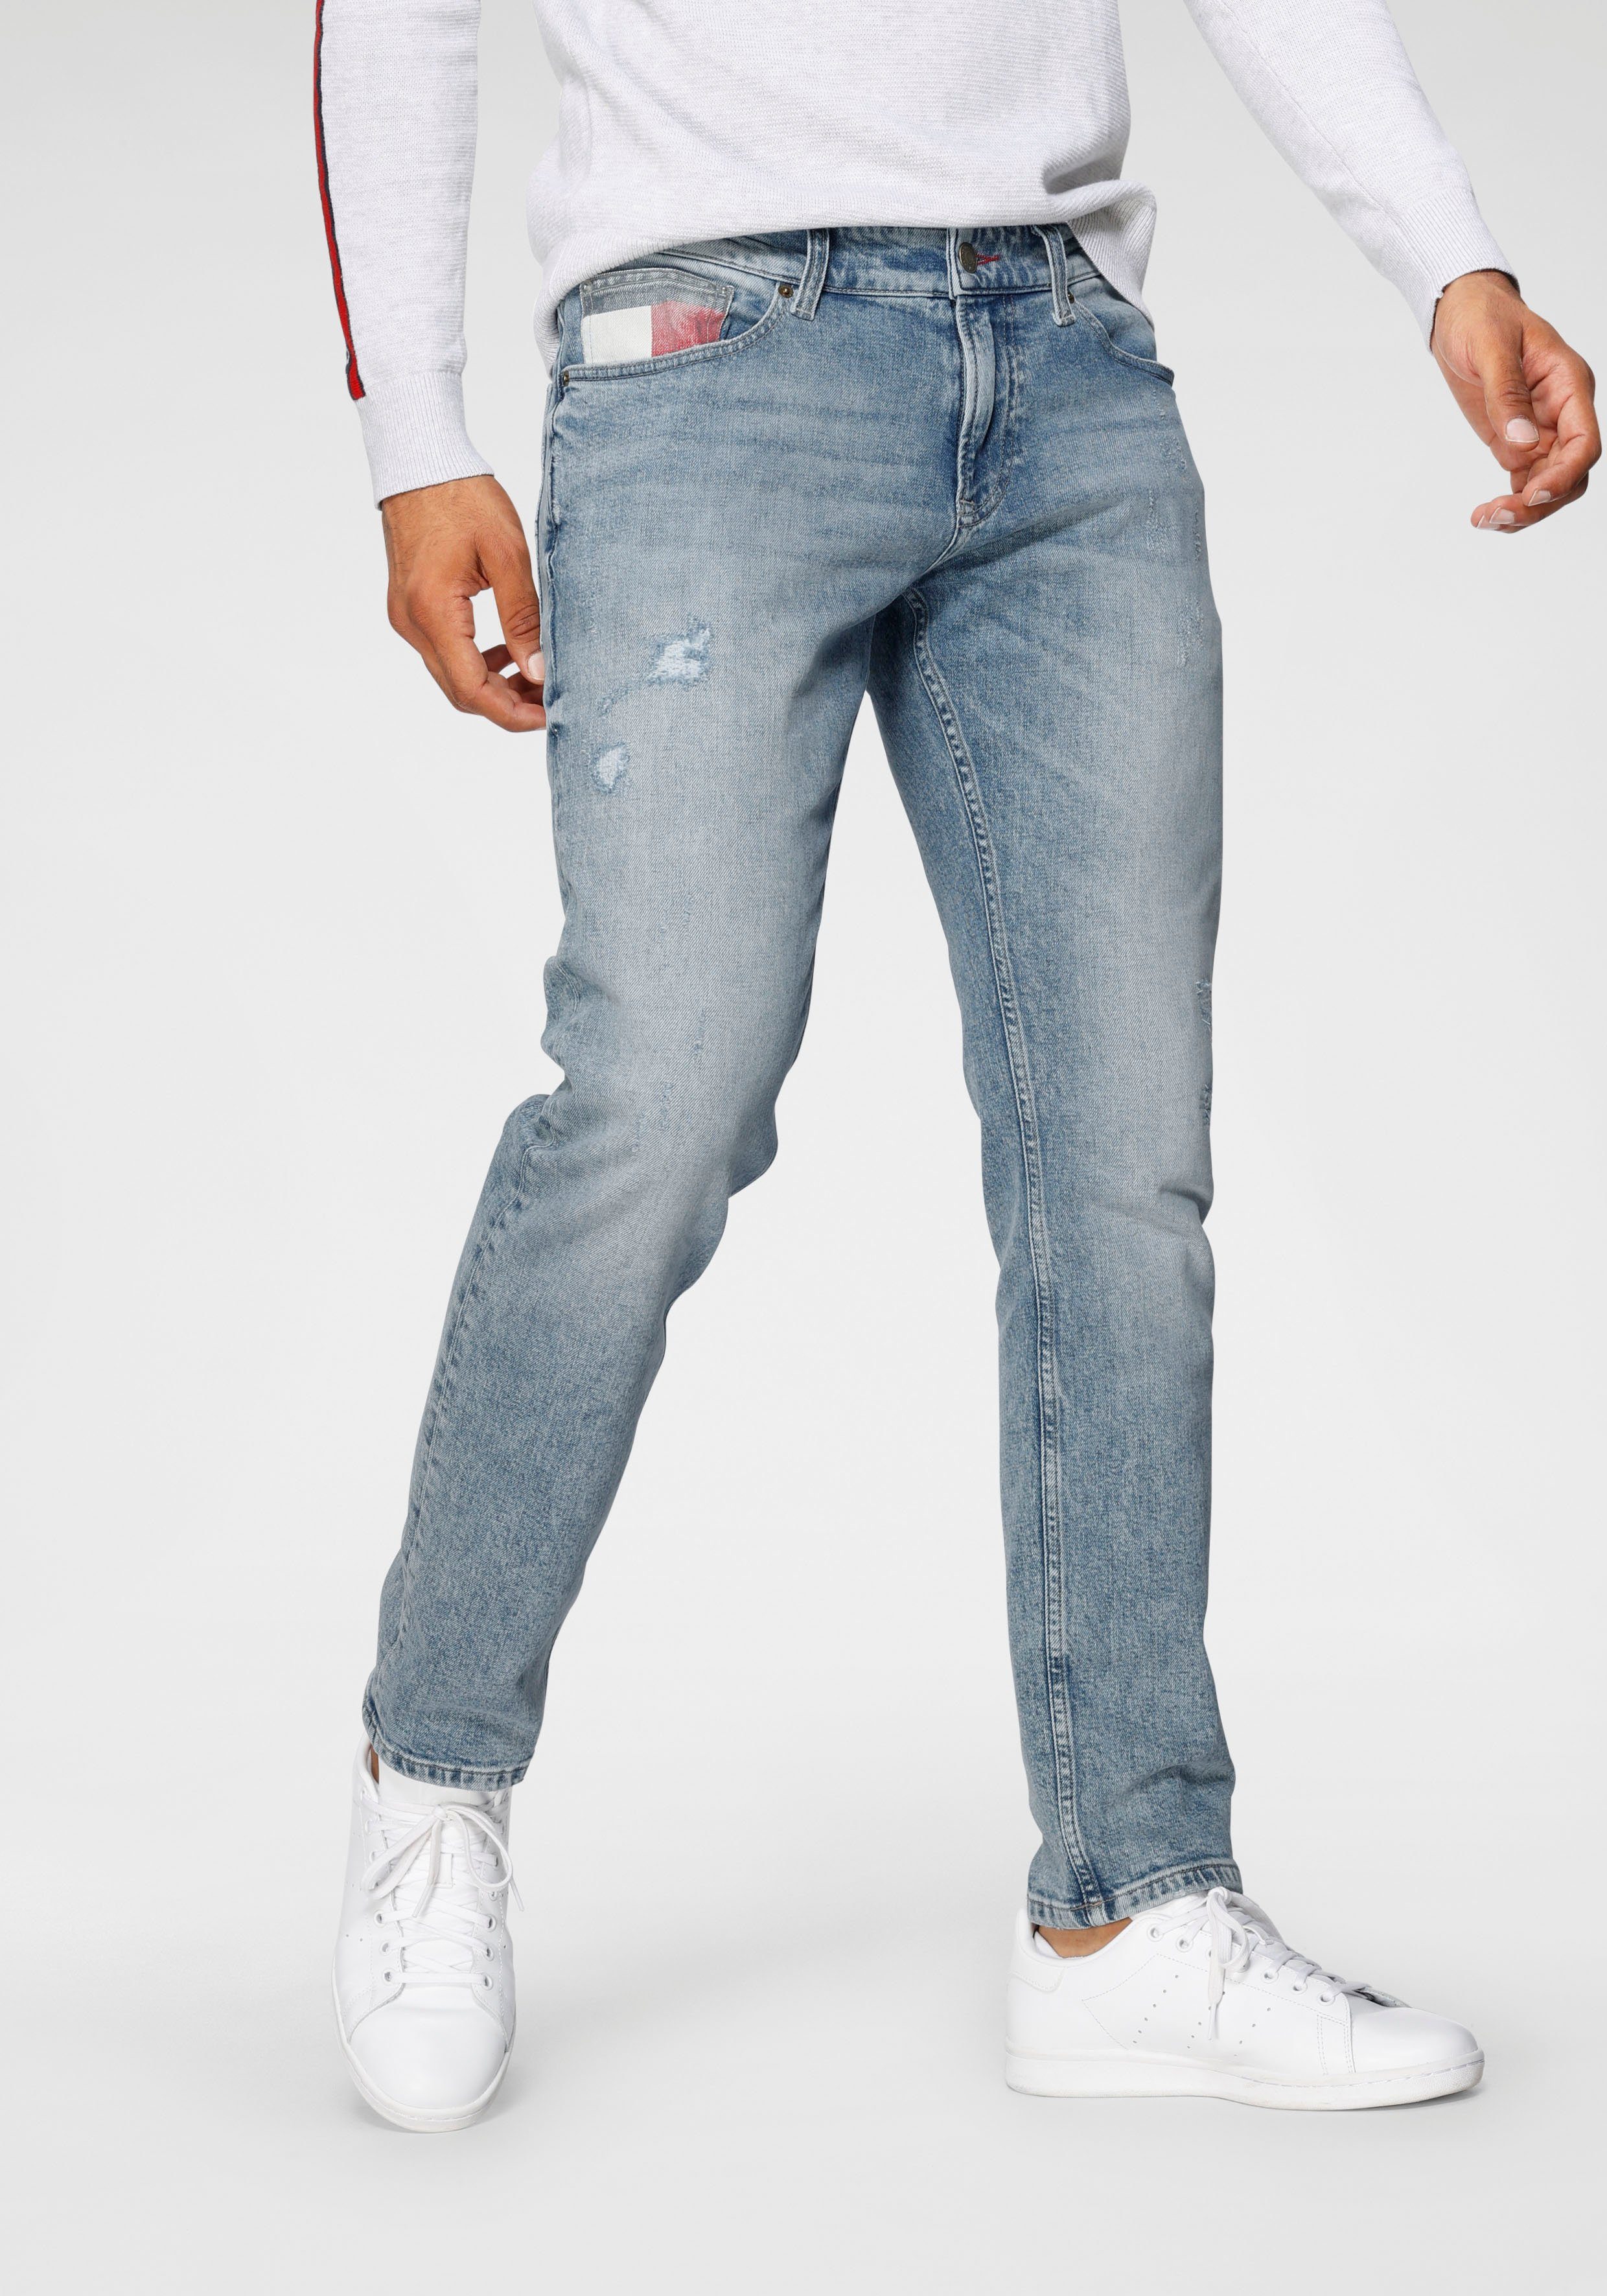 إيجابية الاعصار مصلح امنح الحقوق معدي تحية tommy jeans slim fit -  elkoinc.com